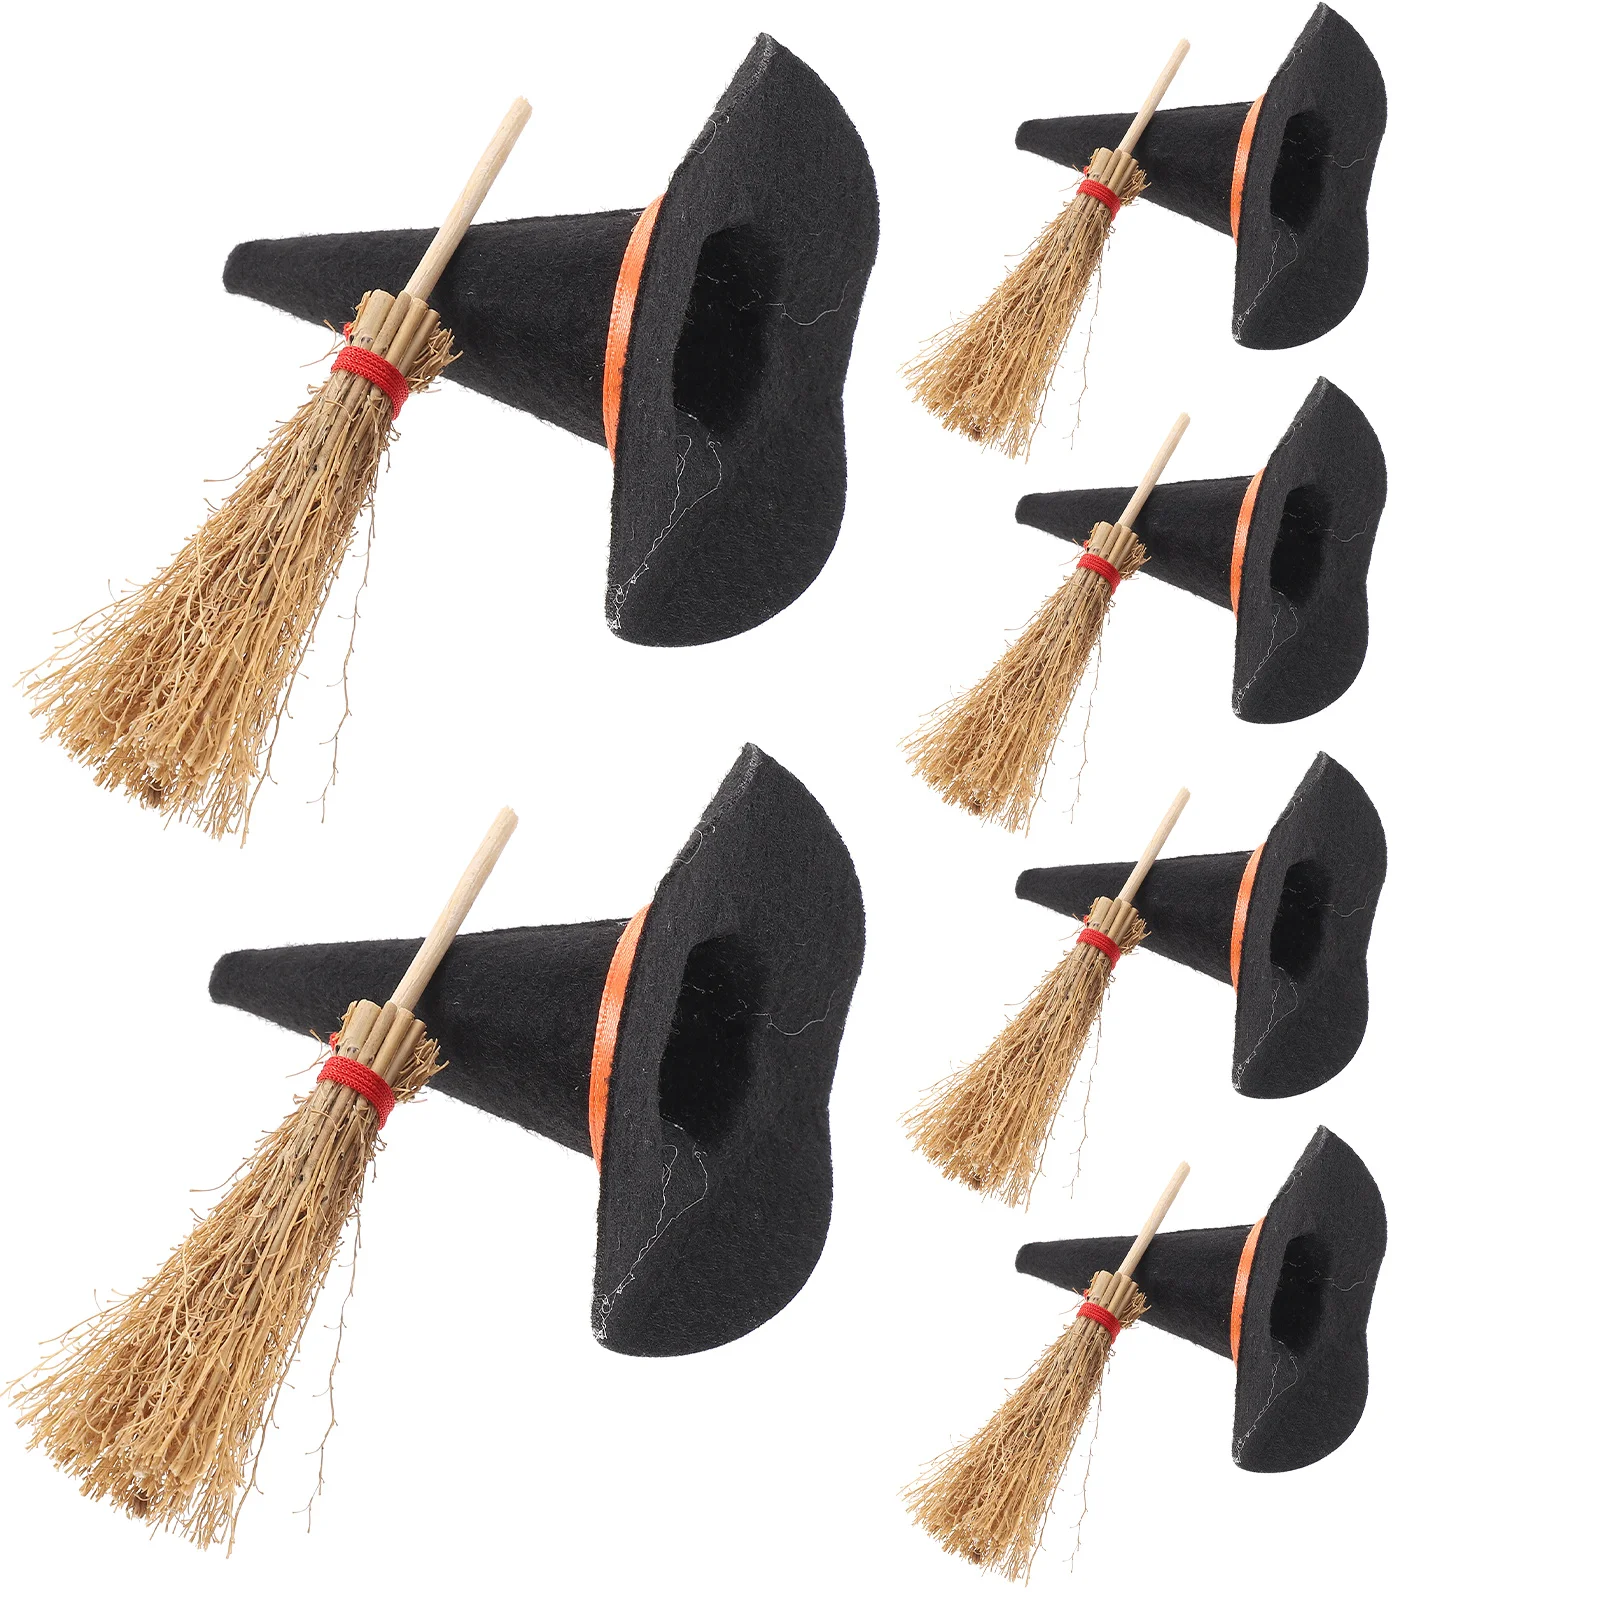 

12 шт. Мини шляпа ведьмы шляпы метла крошечные поделки Хэллоуин Декор детские деревянные миниатюрные украшения